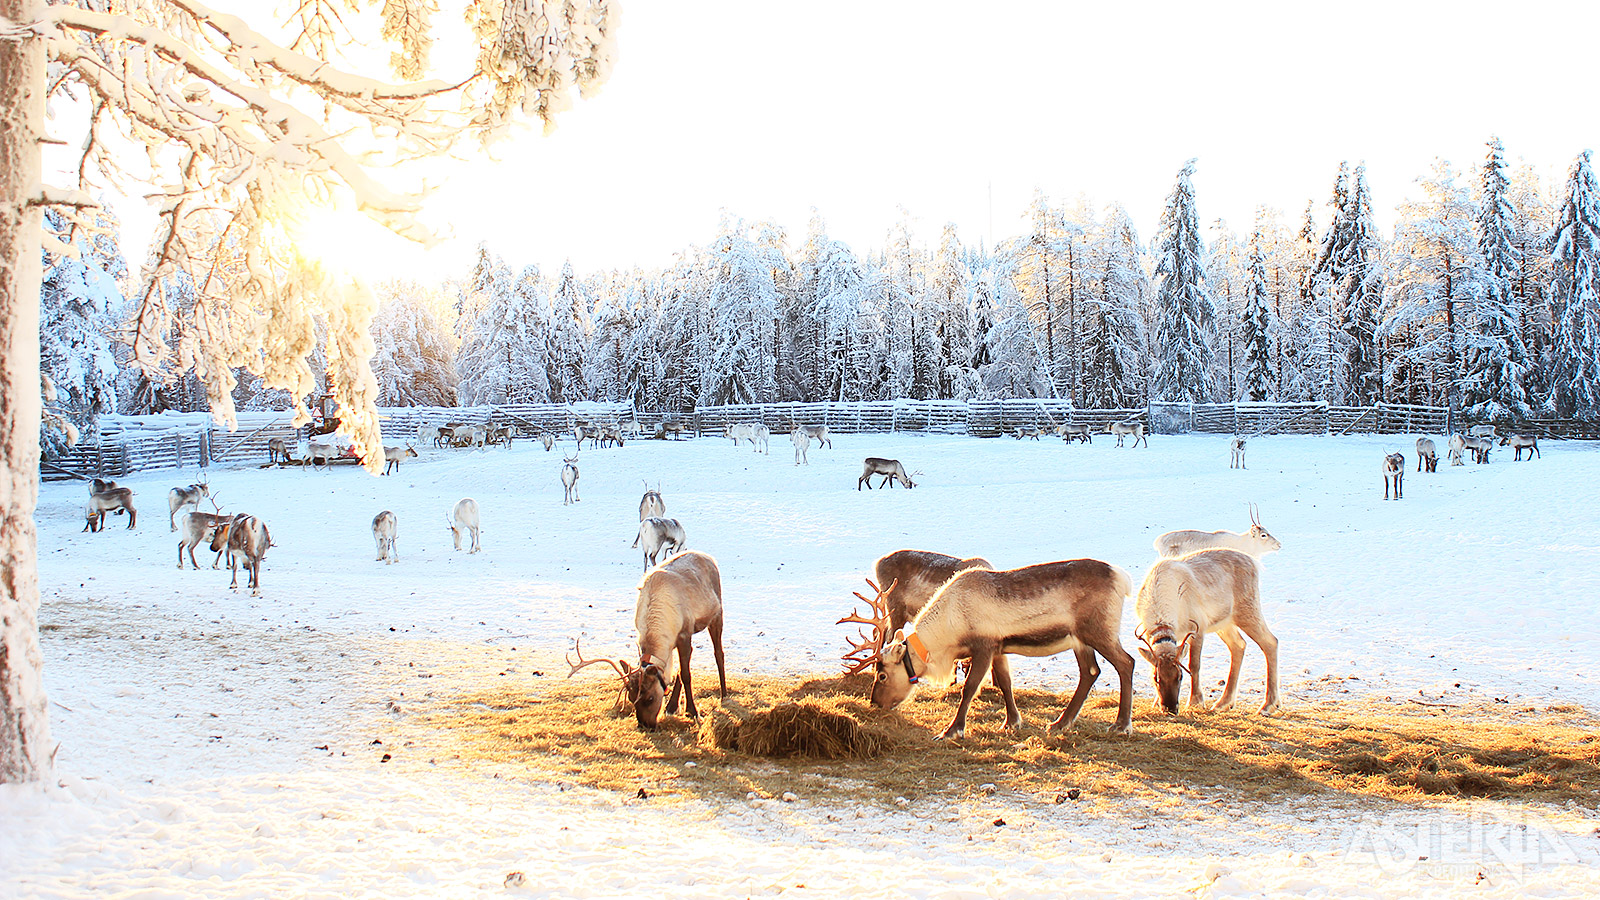 Maak kennis met deze typische Laplandbewoners tijdens een bezoek aan een rendierboerderij